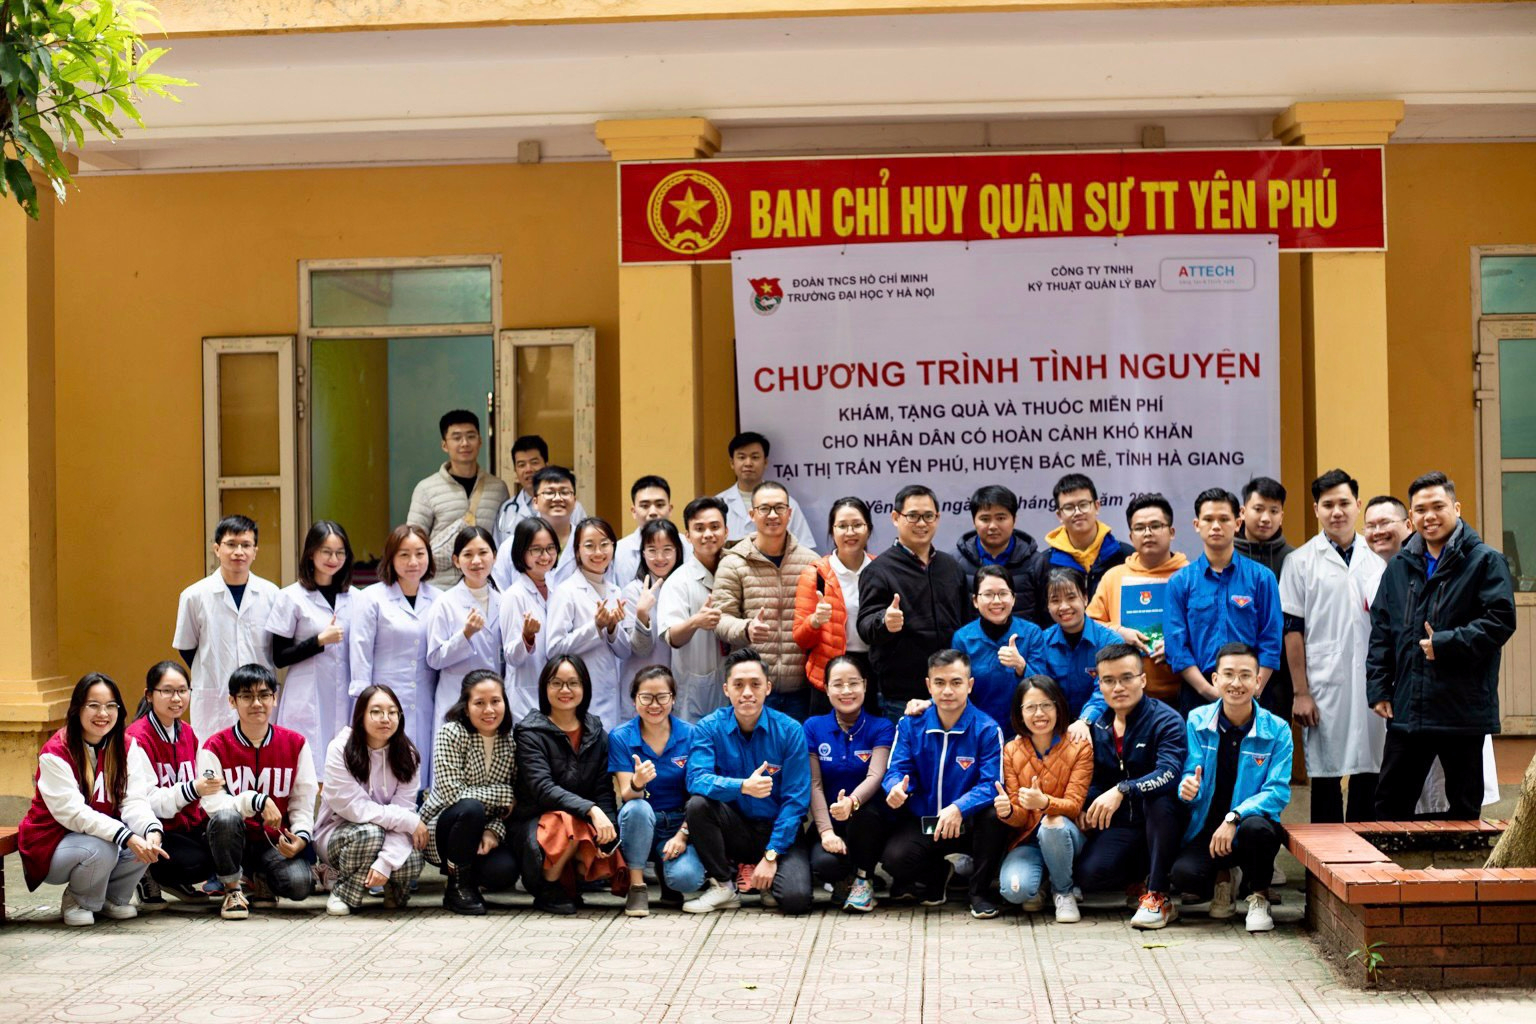 Đoàn thanh niên ATTECH tổ chức chương trình XHTT năm 2022 “Khám, tặng quà và cấp phát thuốc miễn phí” tại Hà Giang